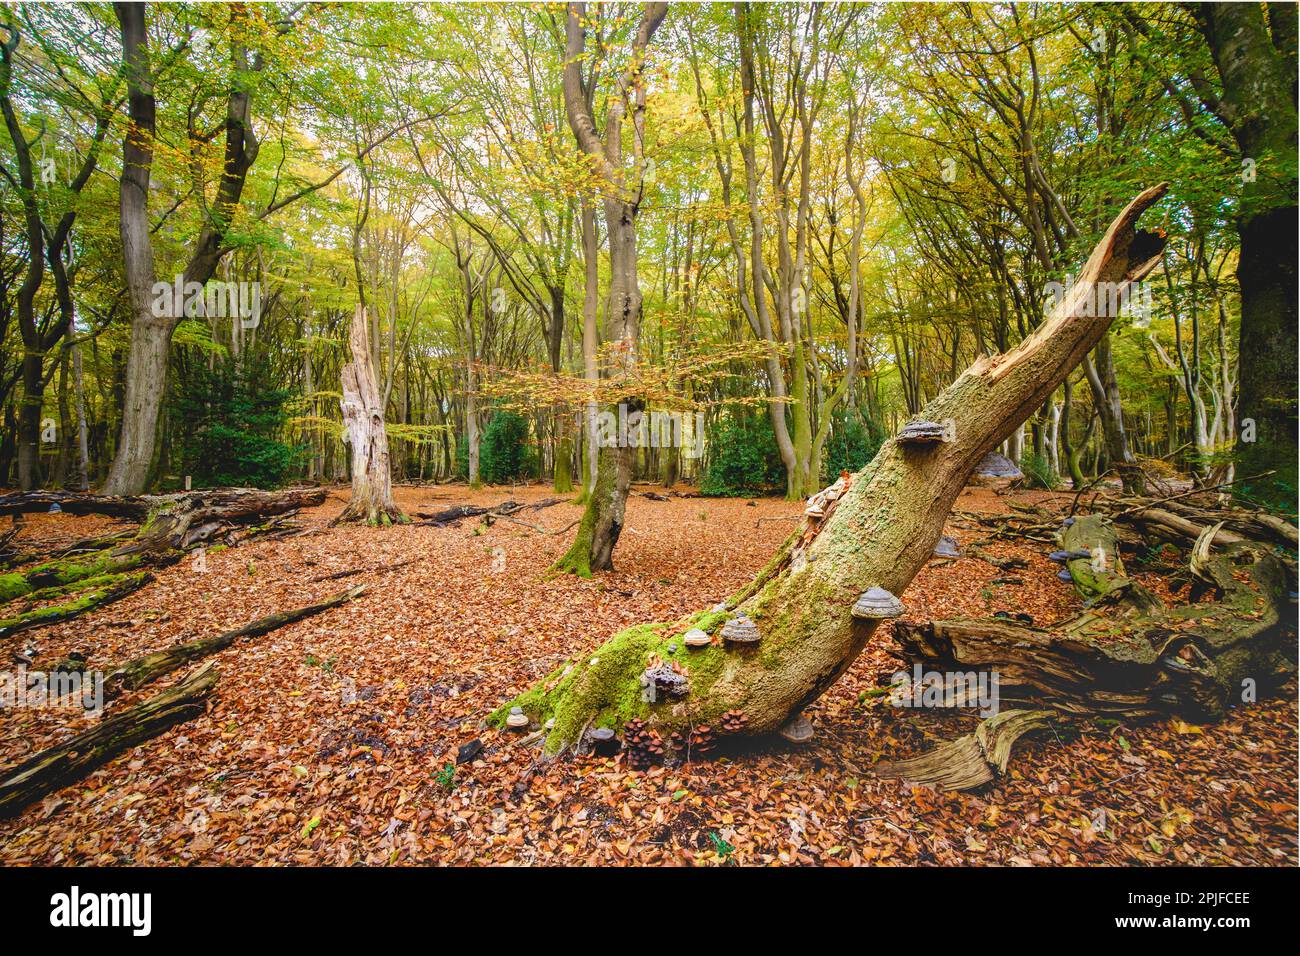 Vecchia foresta primordiale con tronchi d'albero rotti, funghi stagnanti e colori autunnali Foto Stock